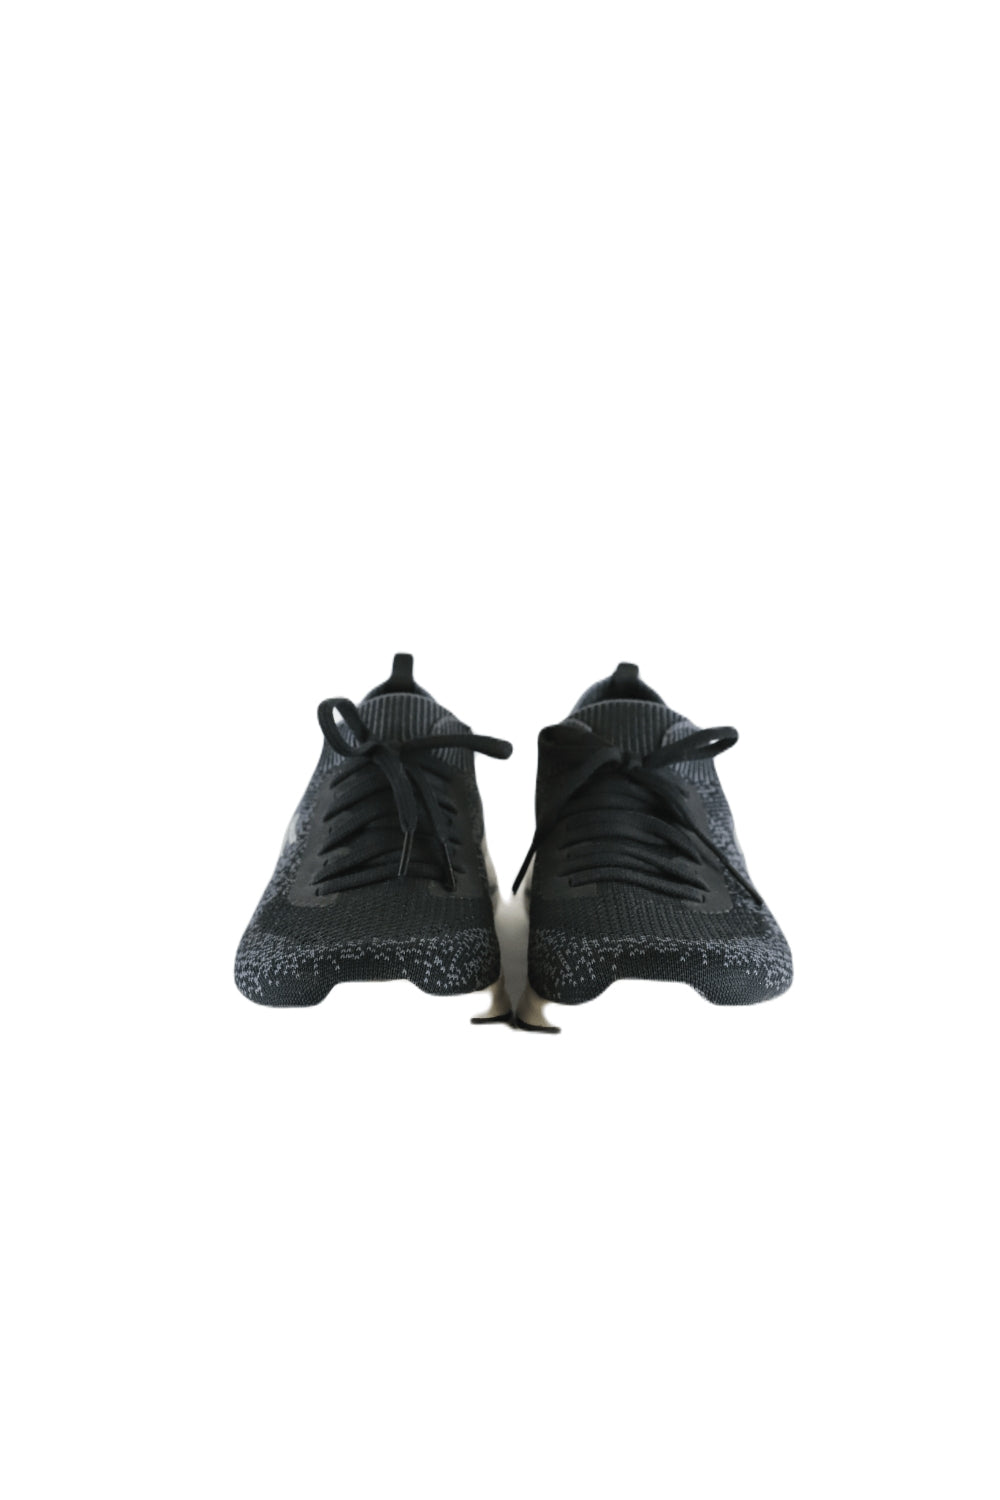 Sketchers Black Sneakers 8.5